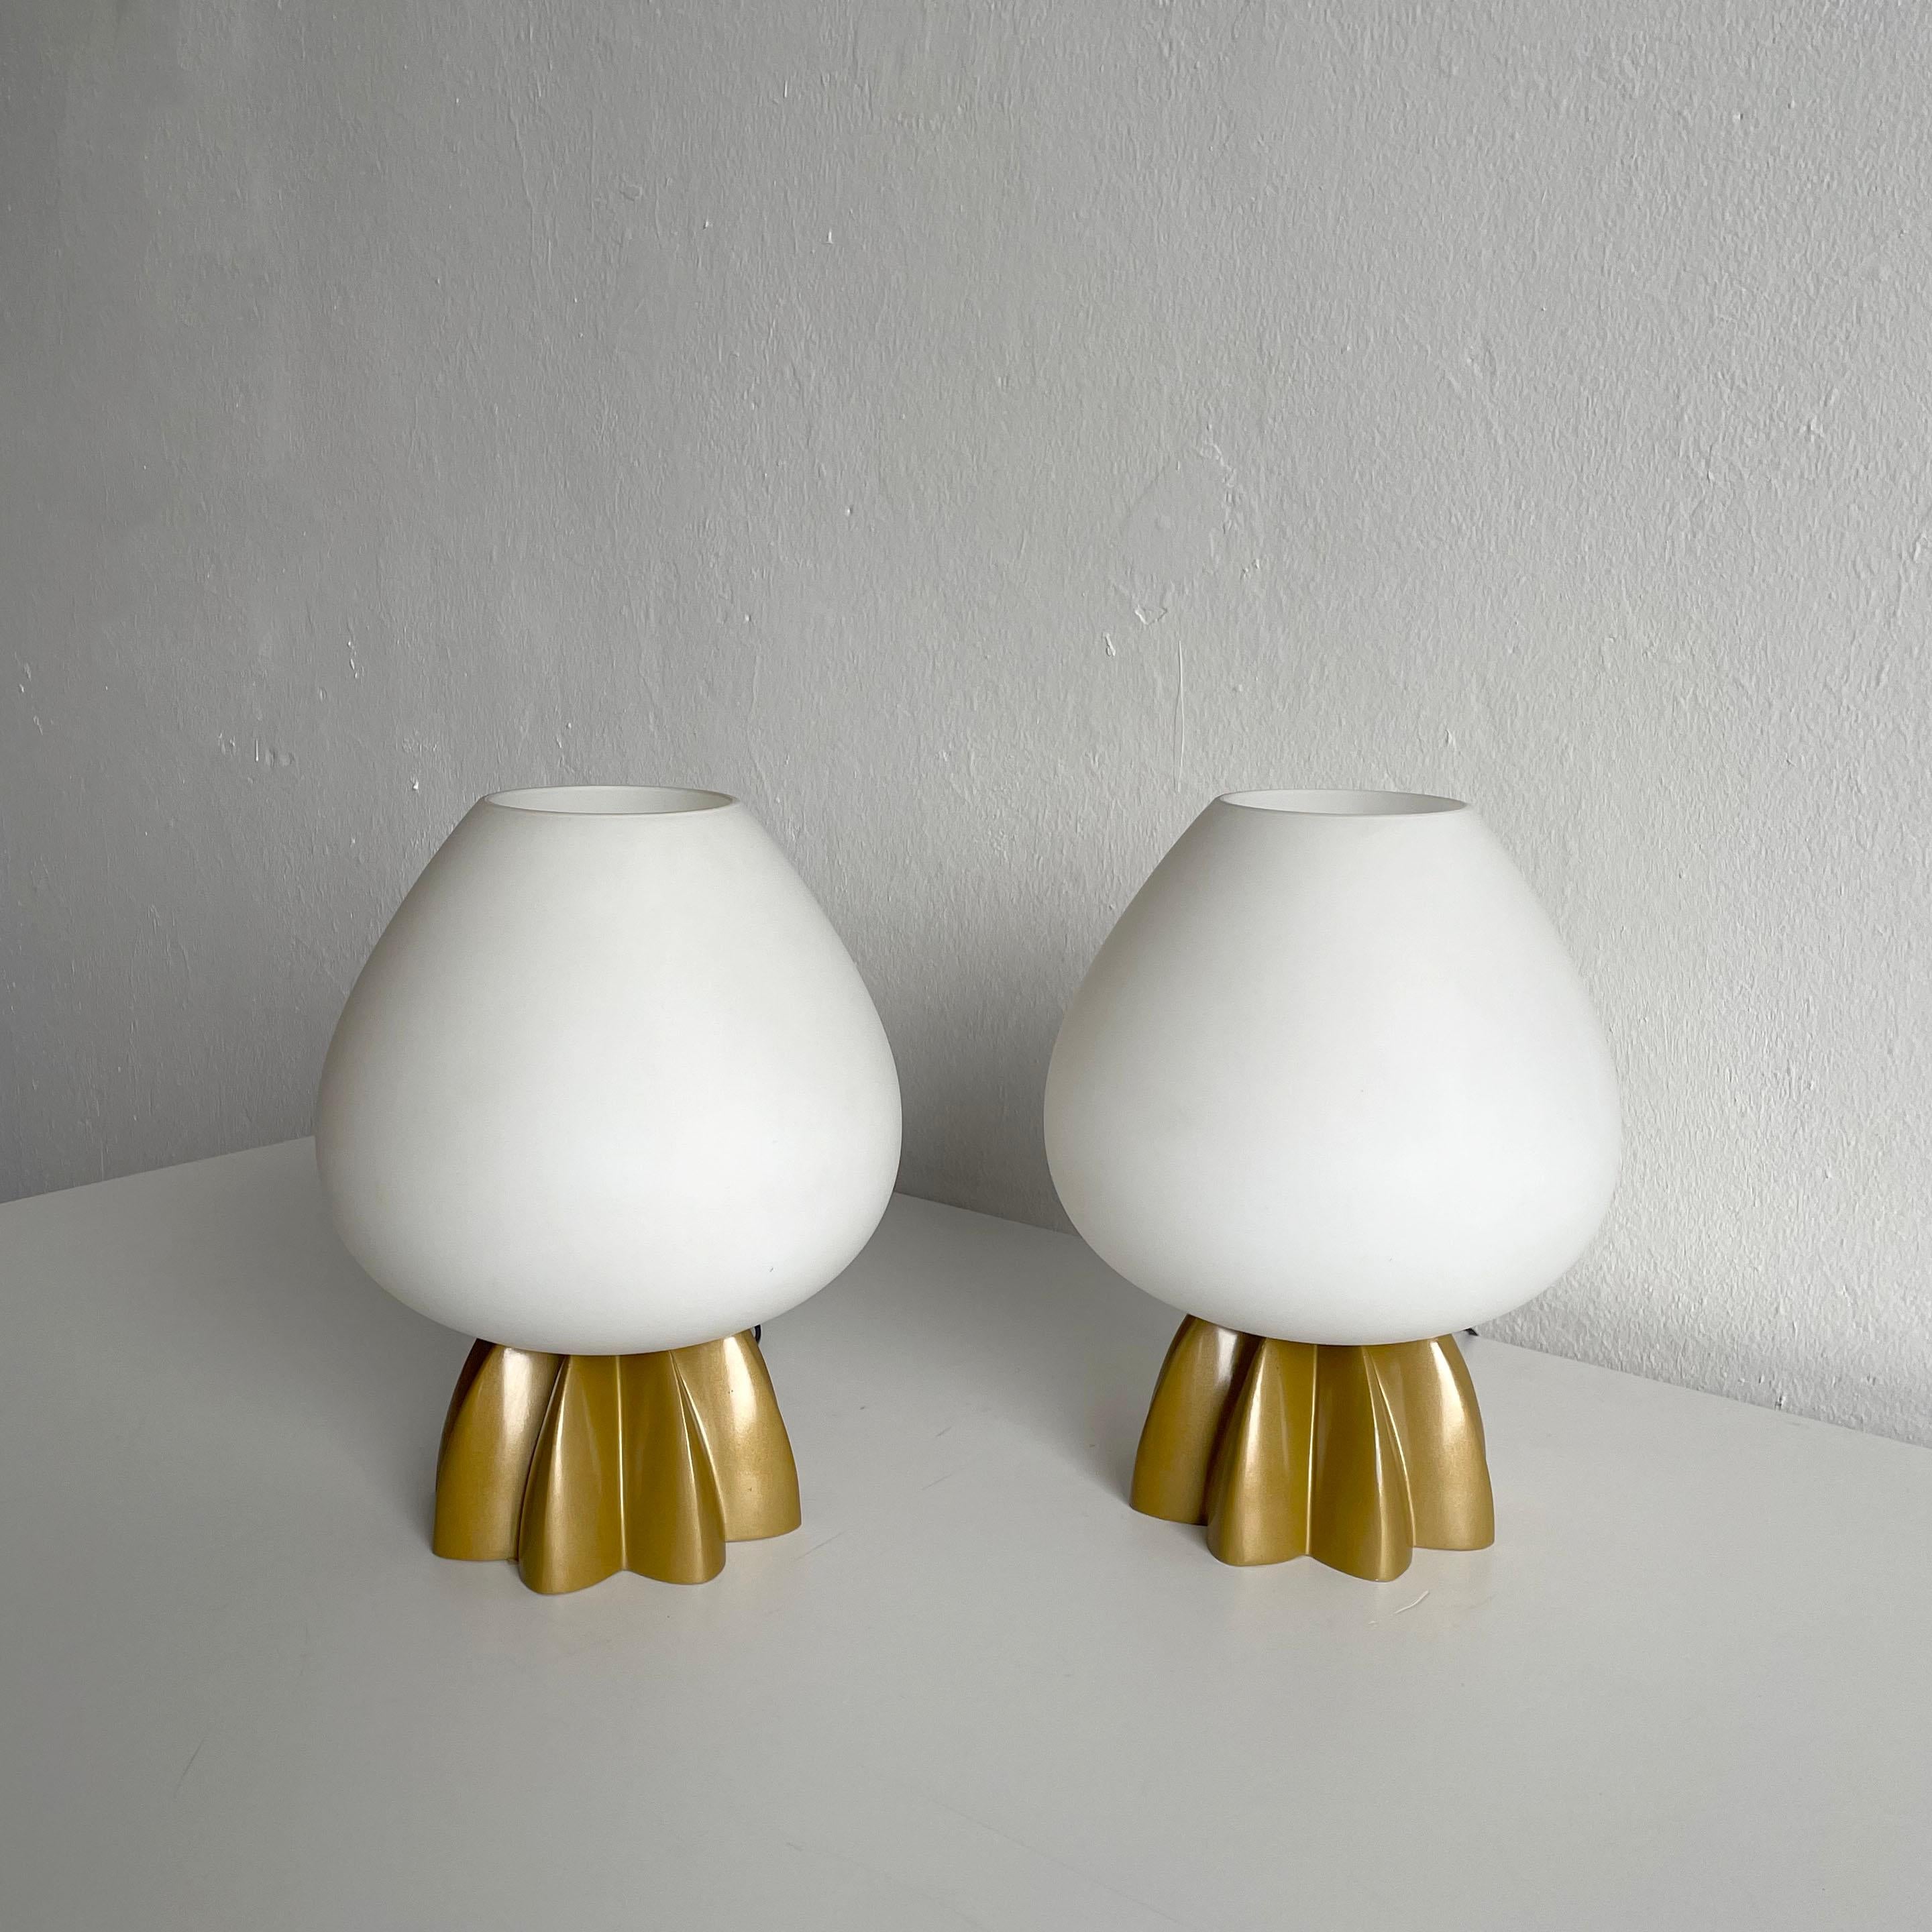 Paire de lampes de table très rares de Rodolfo Dordoni pour la compagnie italienne Foscarini avec des abat-jours en Murano Vetri. 
Le nom de ce modèle rare des lampes est '' Fruits Tavolo ''.

Les deux lampes sont en bon état. Les abat-jours en